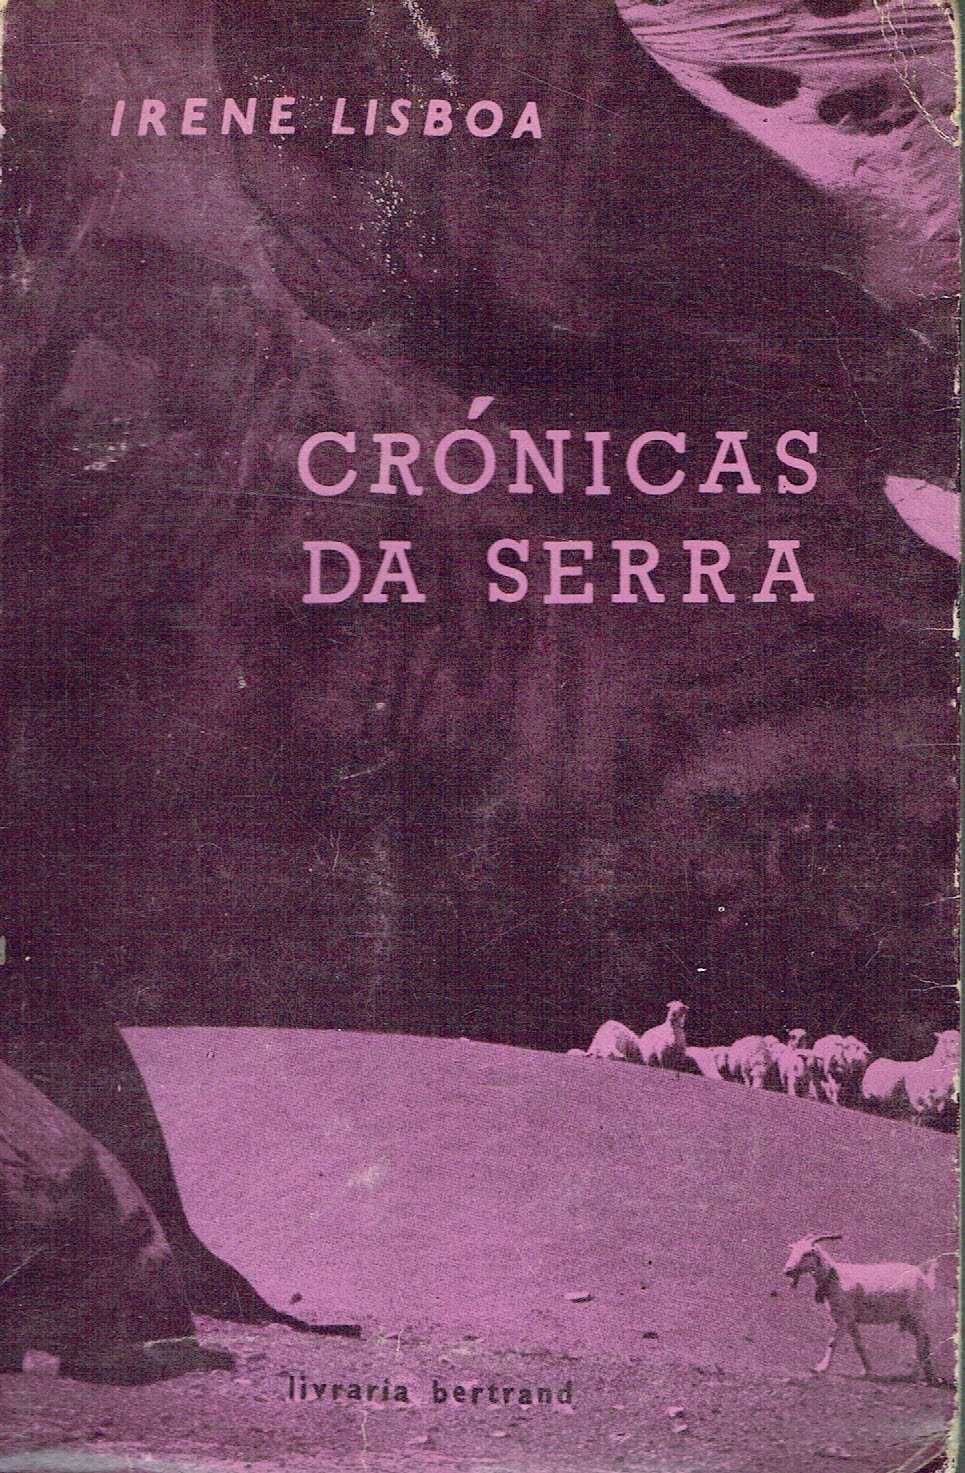 11130
	
Crónicas da serra 
de Irene Lisboa.